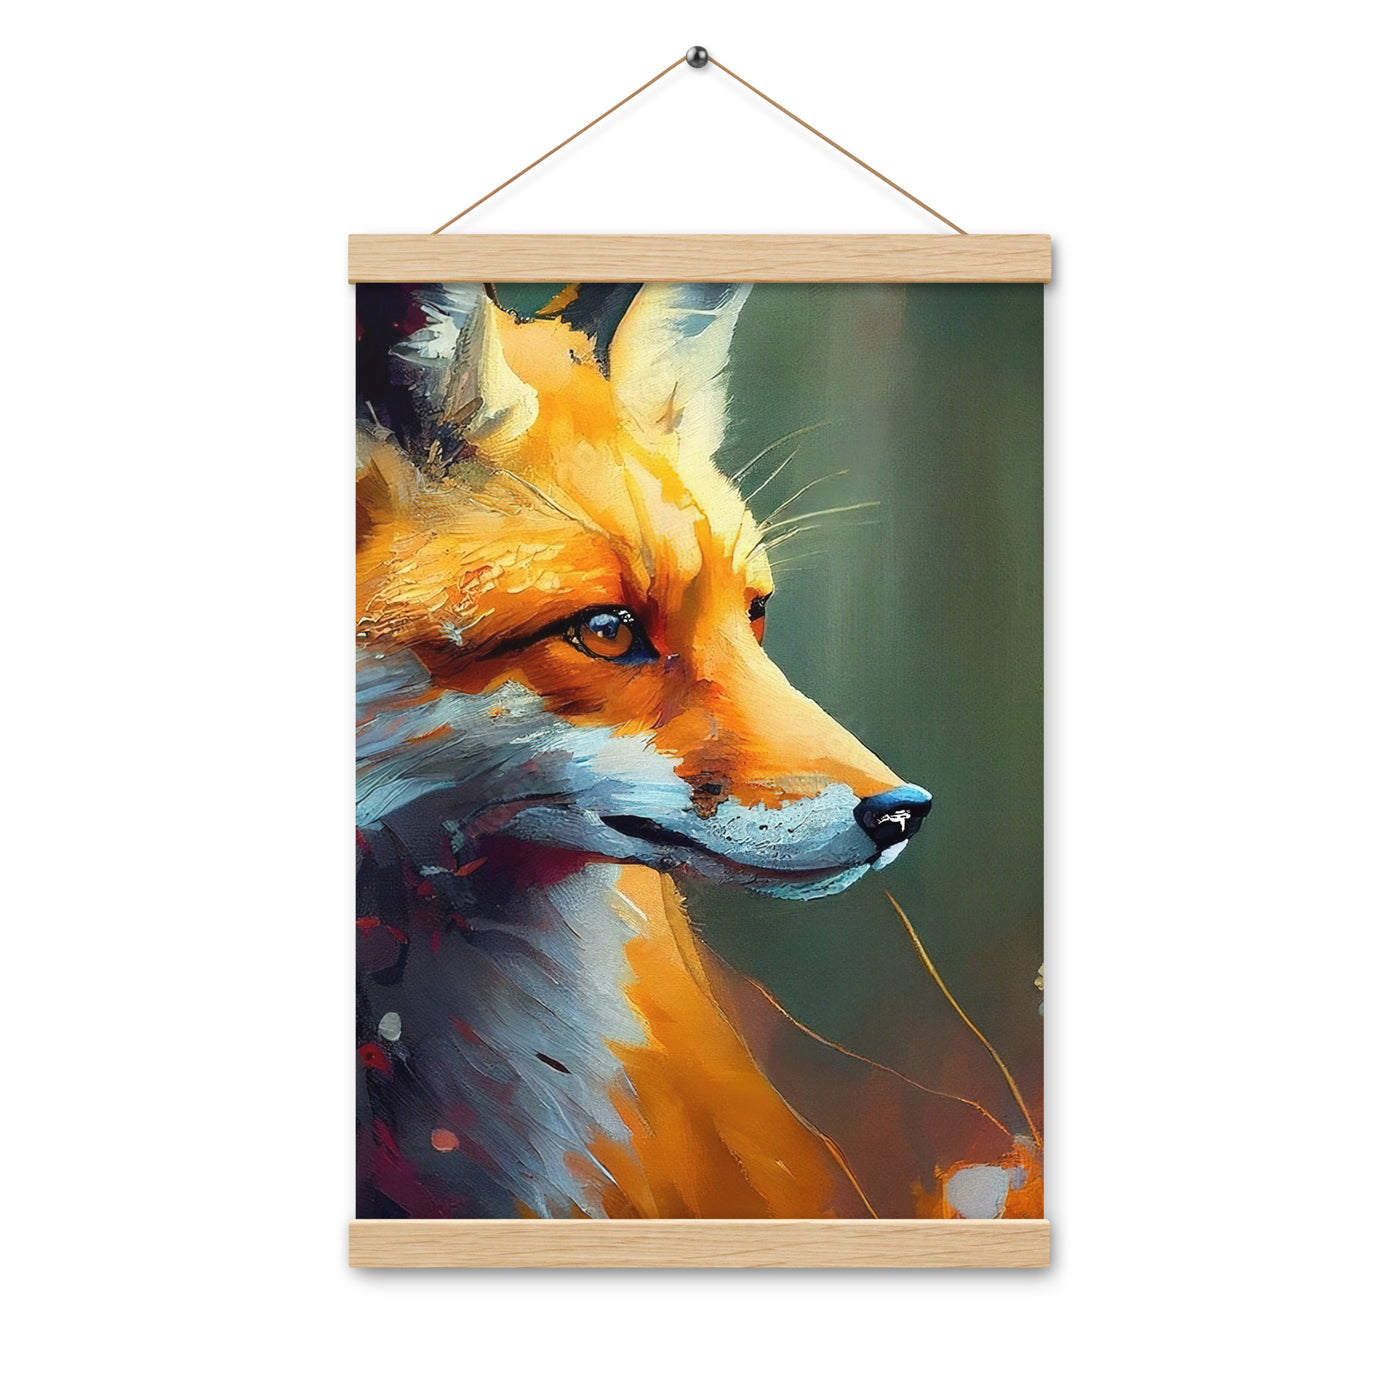 Fuchs - Ölmalerei - Schönes Kunstwerk - Premium Poster mit Aufhängung camping xxx Oak 30.5 x 45.7 cm